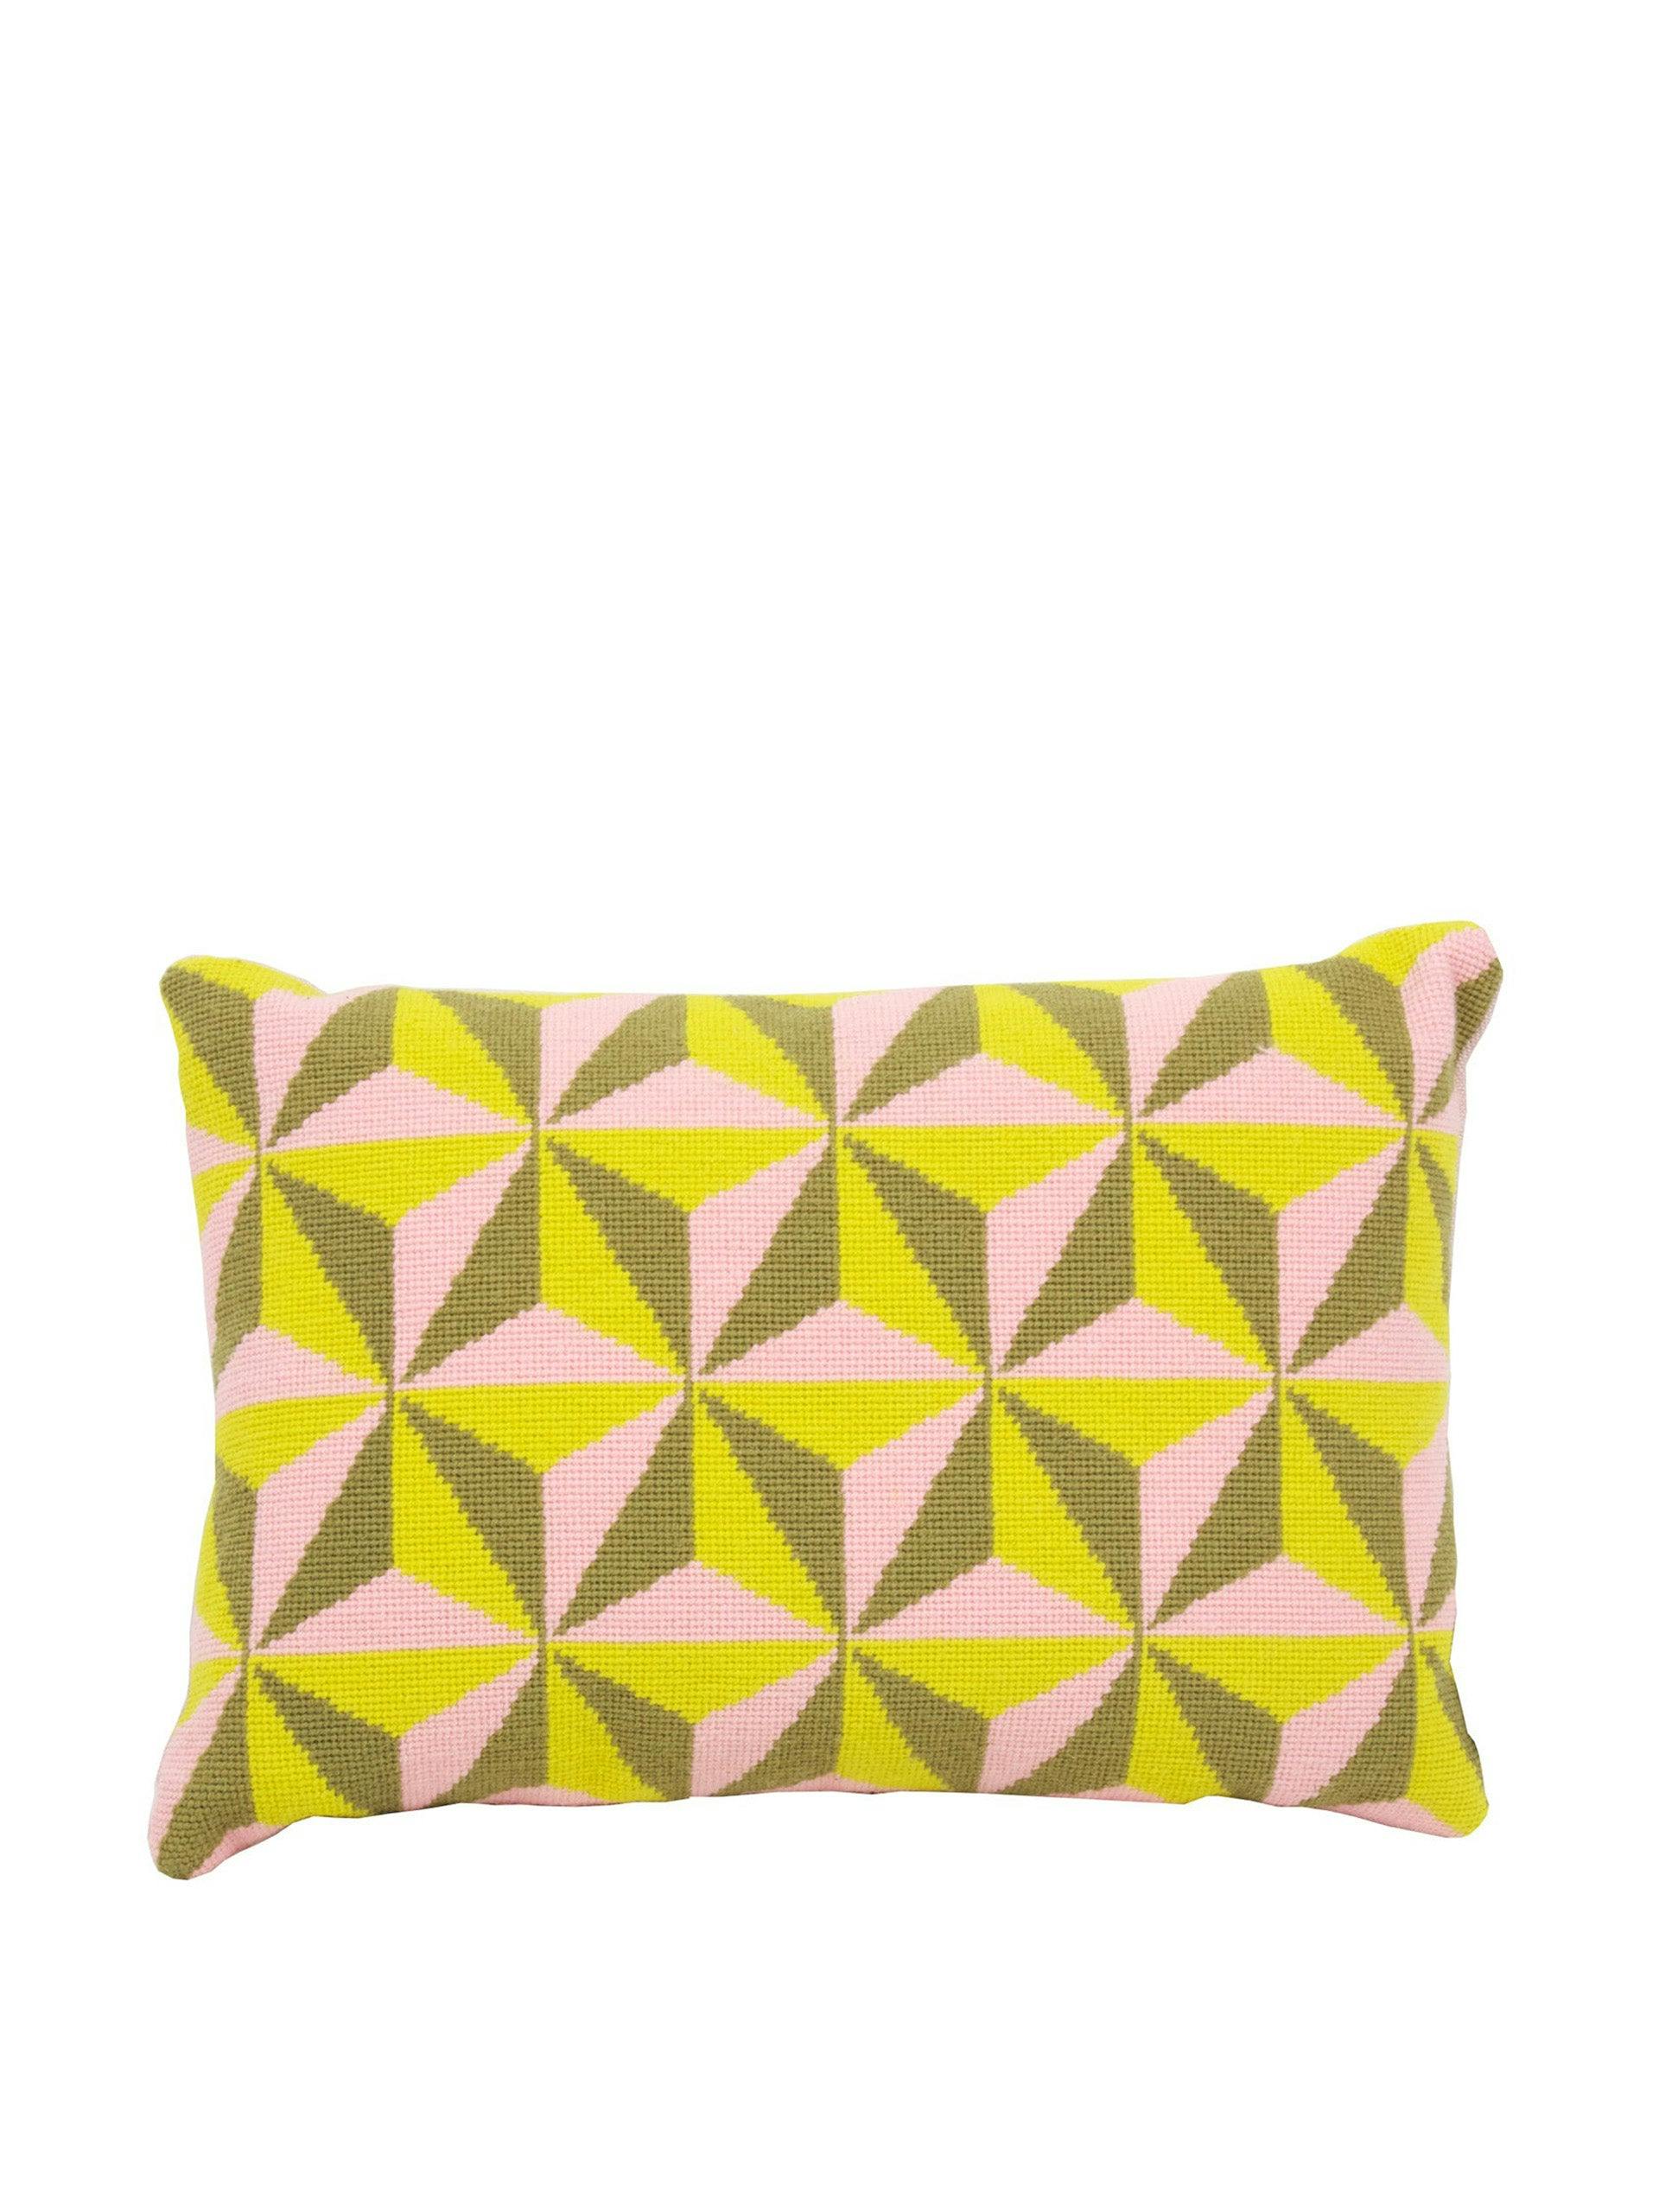 Tetrahedron cushion